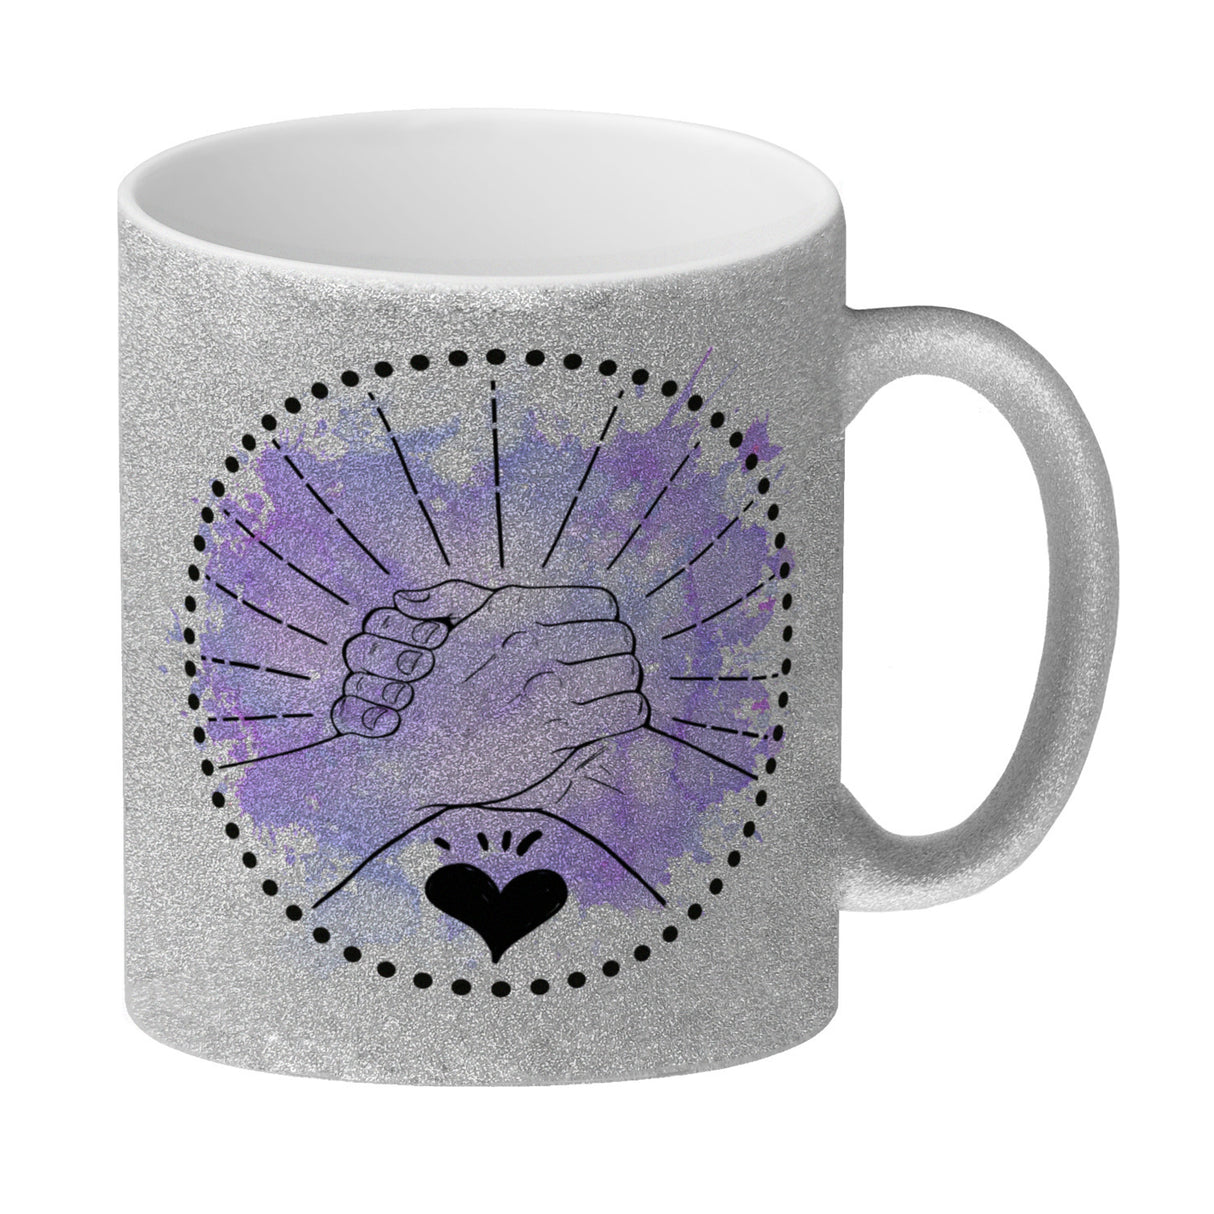 Freundschaft Kaffeebecher in violett mit tollem Spruch